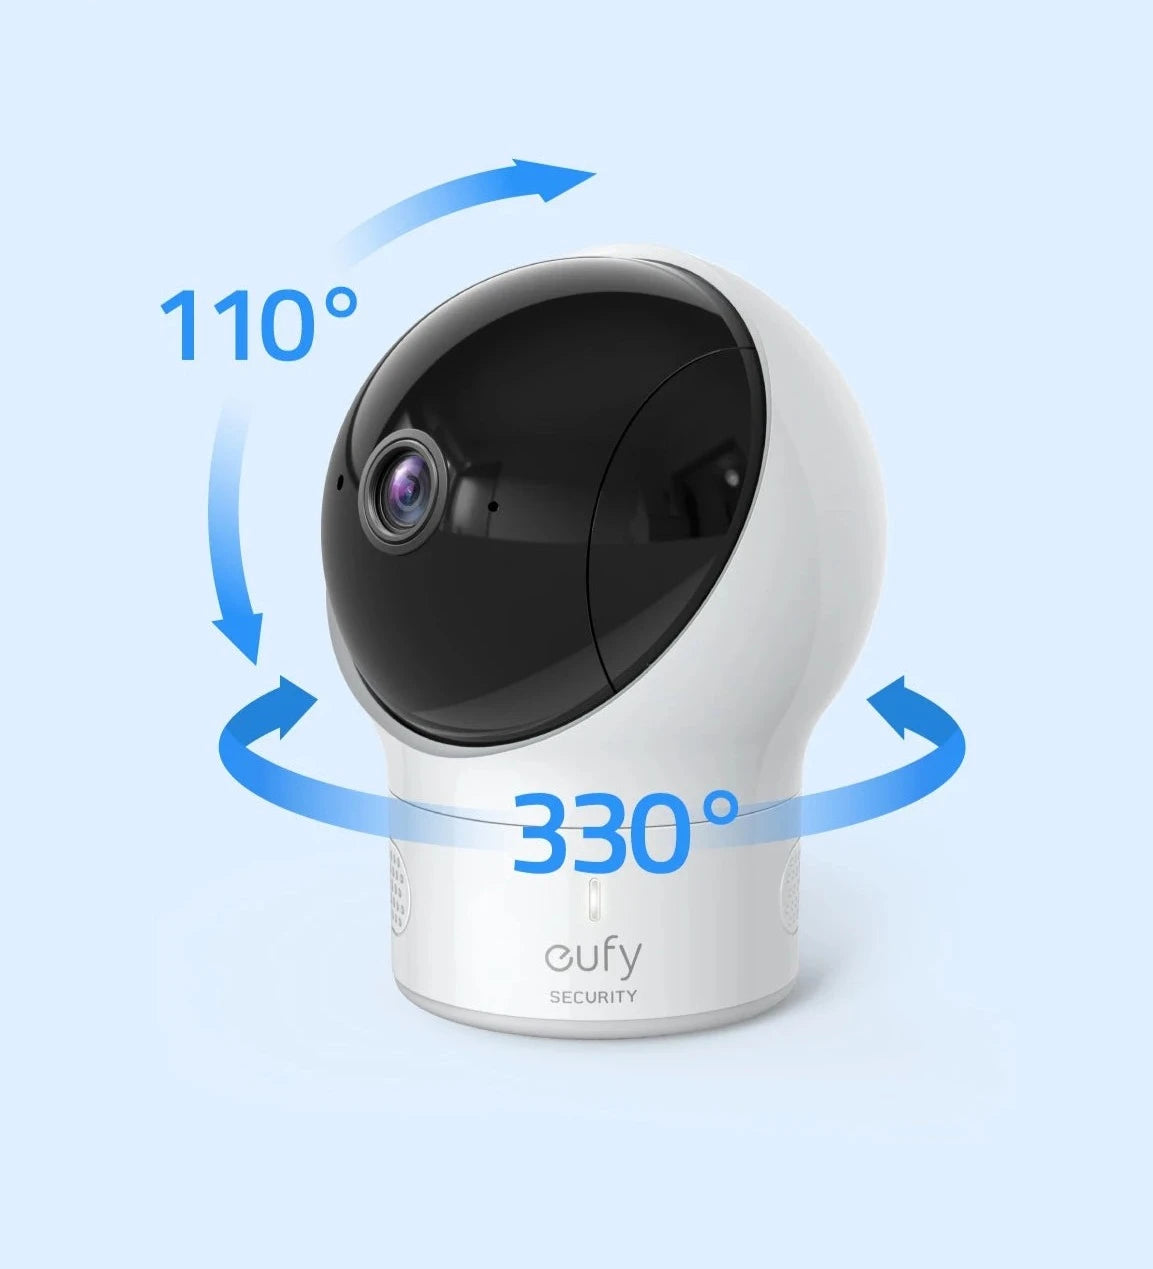 Moniteur vidéo de sécurité pour bébé eufy - Surveillance audio, résolution HD 720p, 110°, sécurité, lecteur berceuse, vision nocturne - iHome-Smart